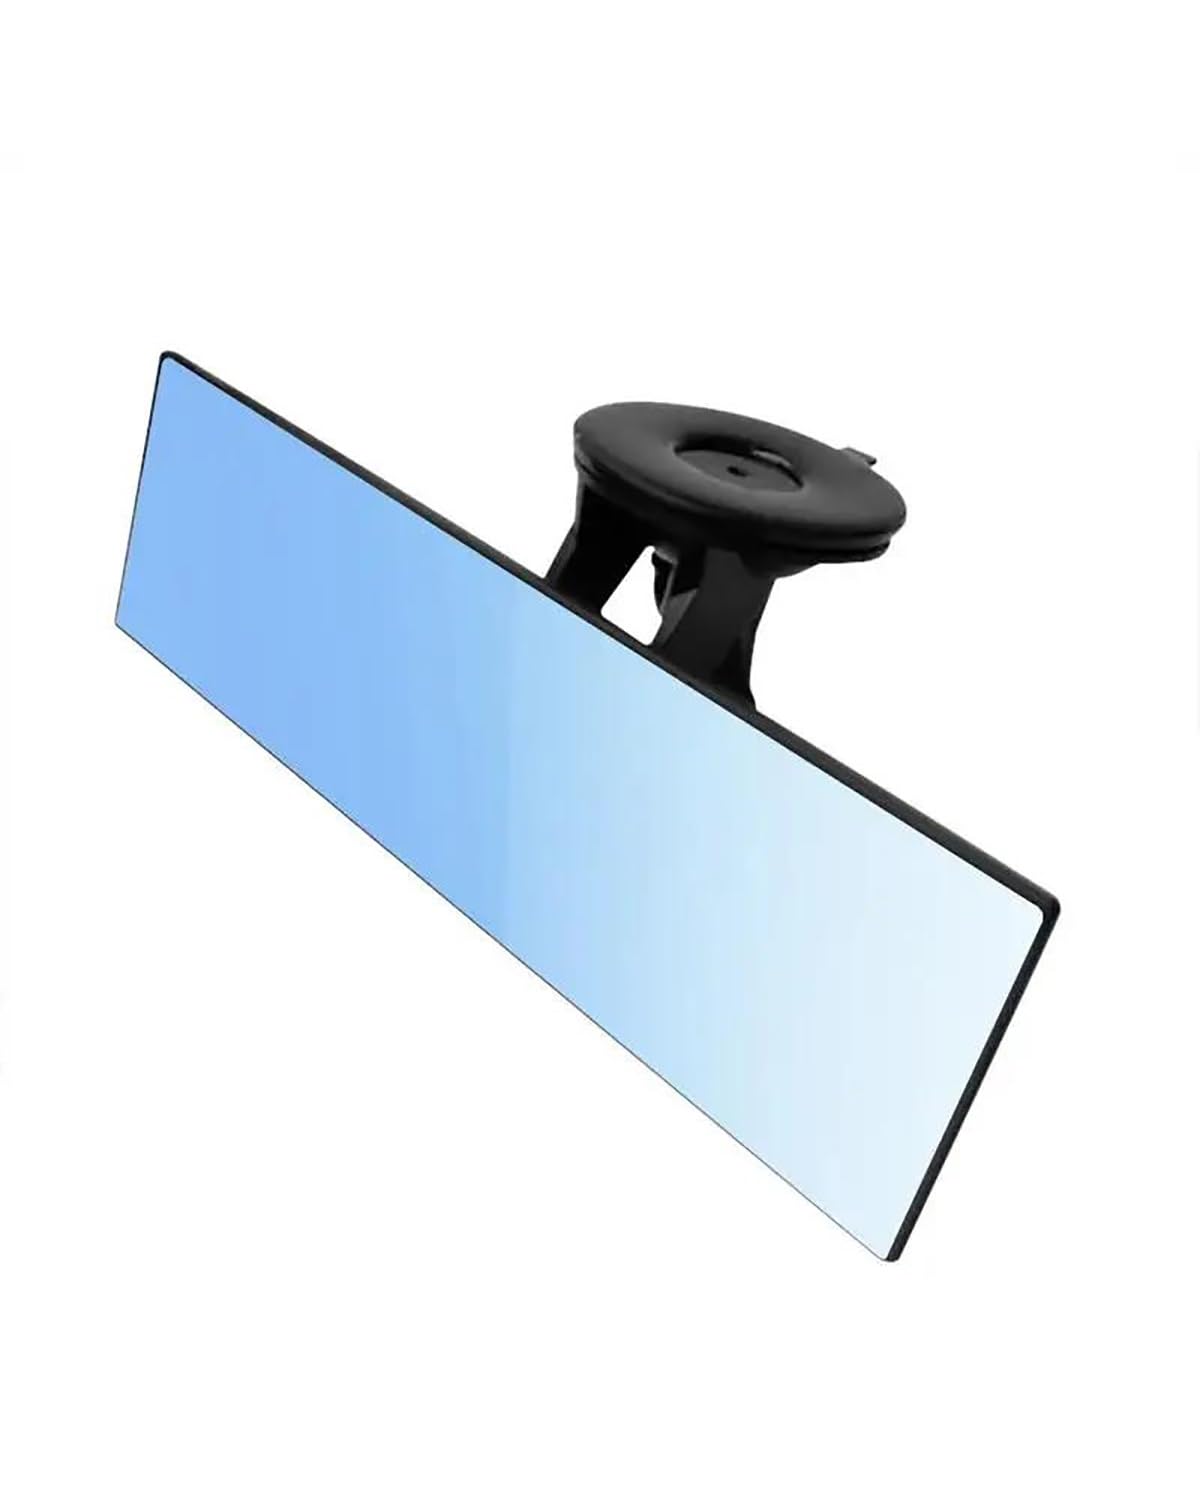 Weitwinkel Rückspiegel Universal-Autospiegel blendfrei Auto-Rückspiegel Innenspiegel mit Saugnapf blauer Spiegel Autozubehör für Auto LKW Auto Innenspiegel Rückansicht von ZJSSJZ